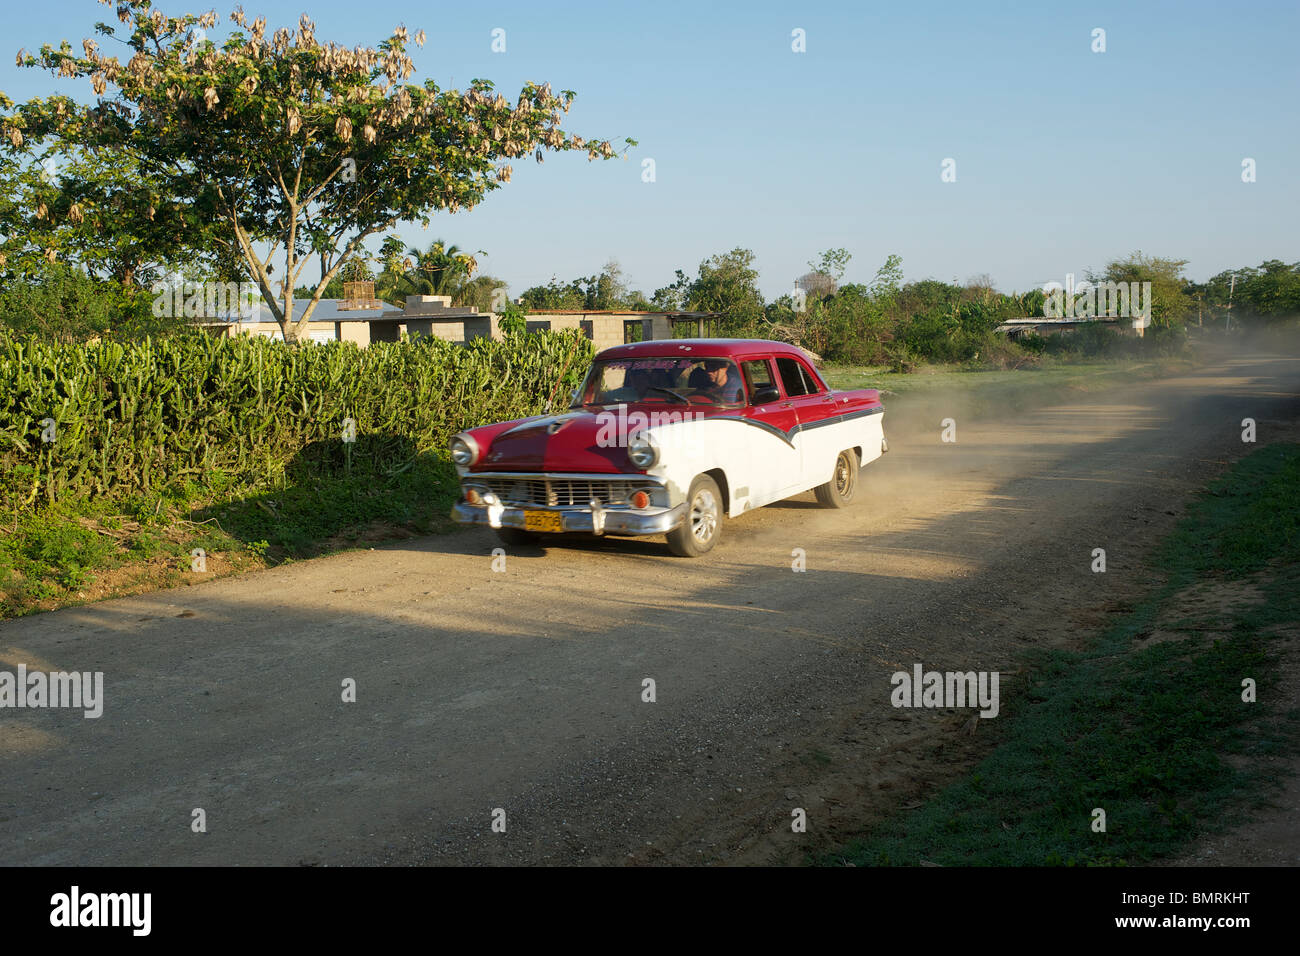 Coche clásico en un camino de tierra en Cuba Foto de stock